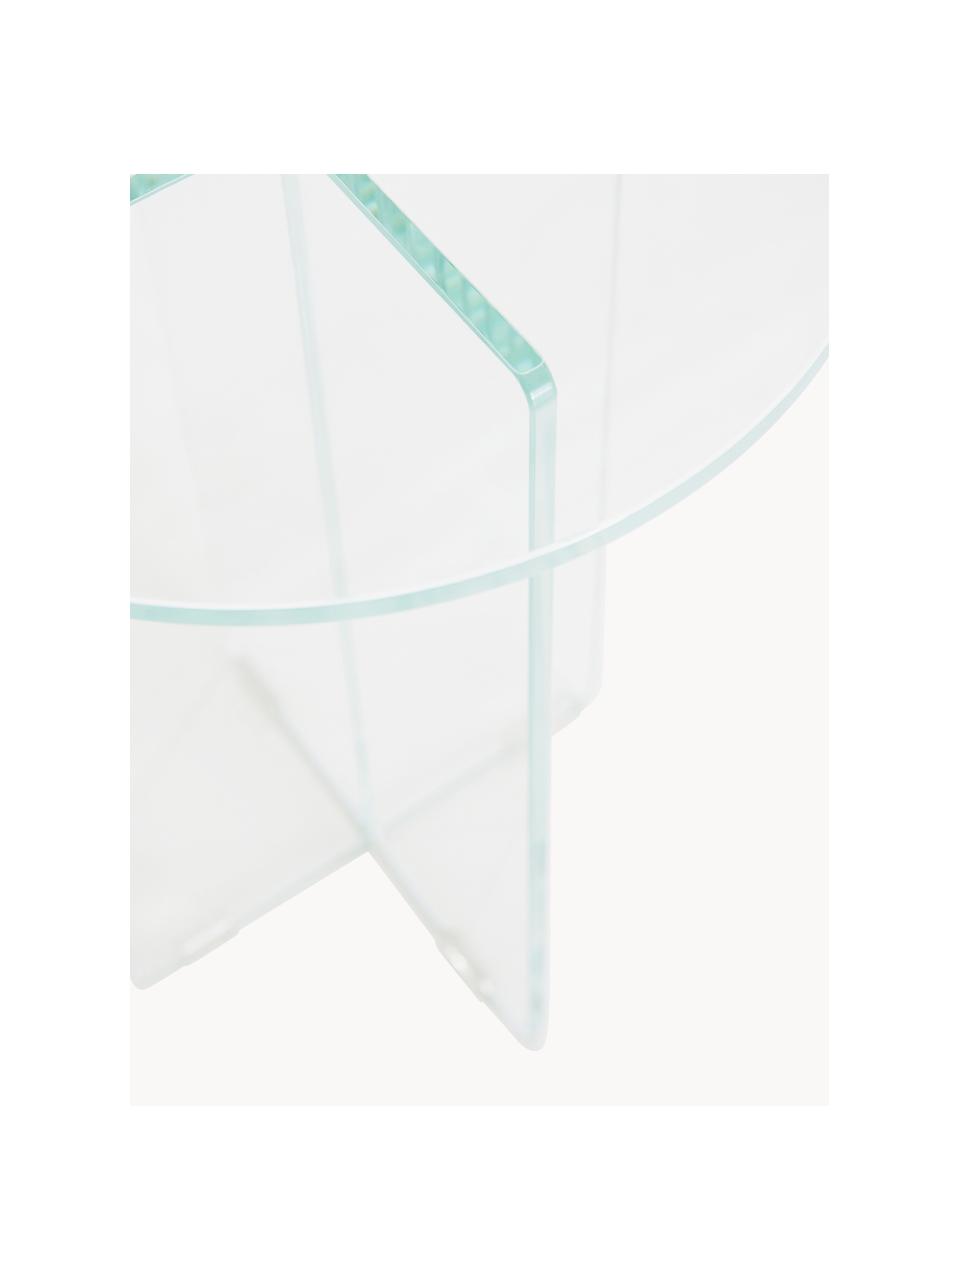 Runder Beistelltisch Iris mit Glasplatte, Tischplatte: Glas, gehärtet, Gestell: Glas, gehärtet, Transparent, Ø 35, H 45 cm